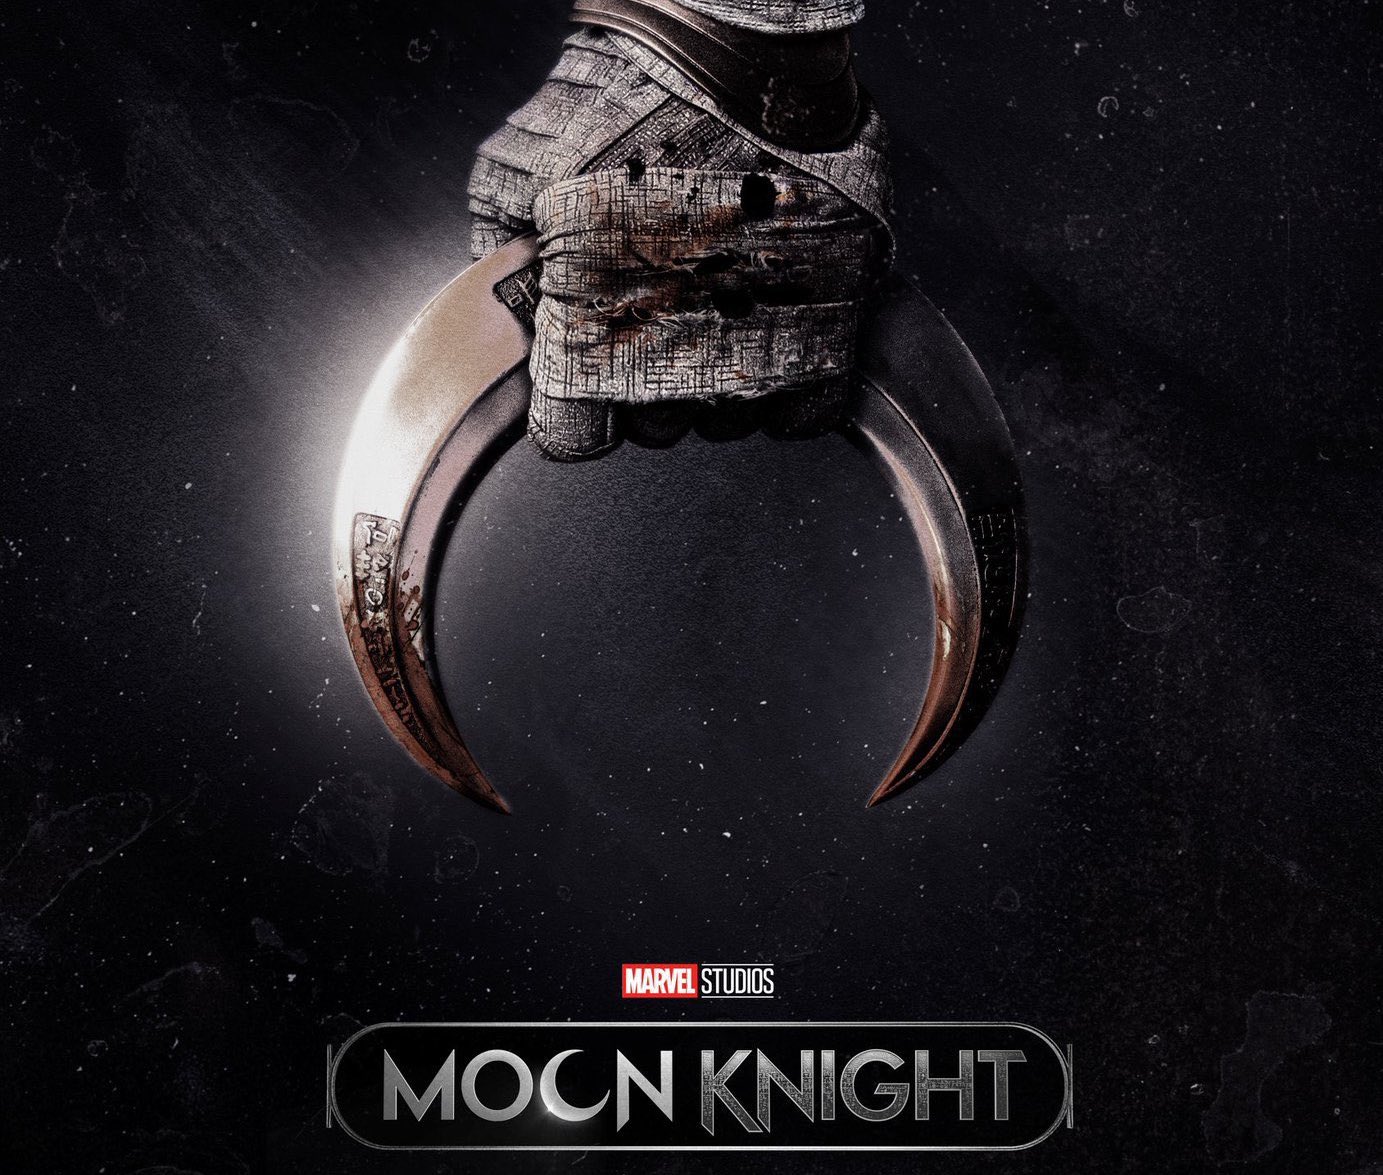 Watch Disney+ 'Moon Knight' trailer ahead of March 30 start date